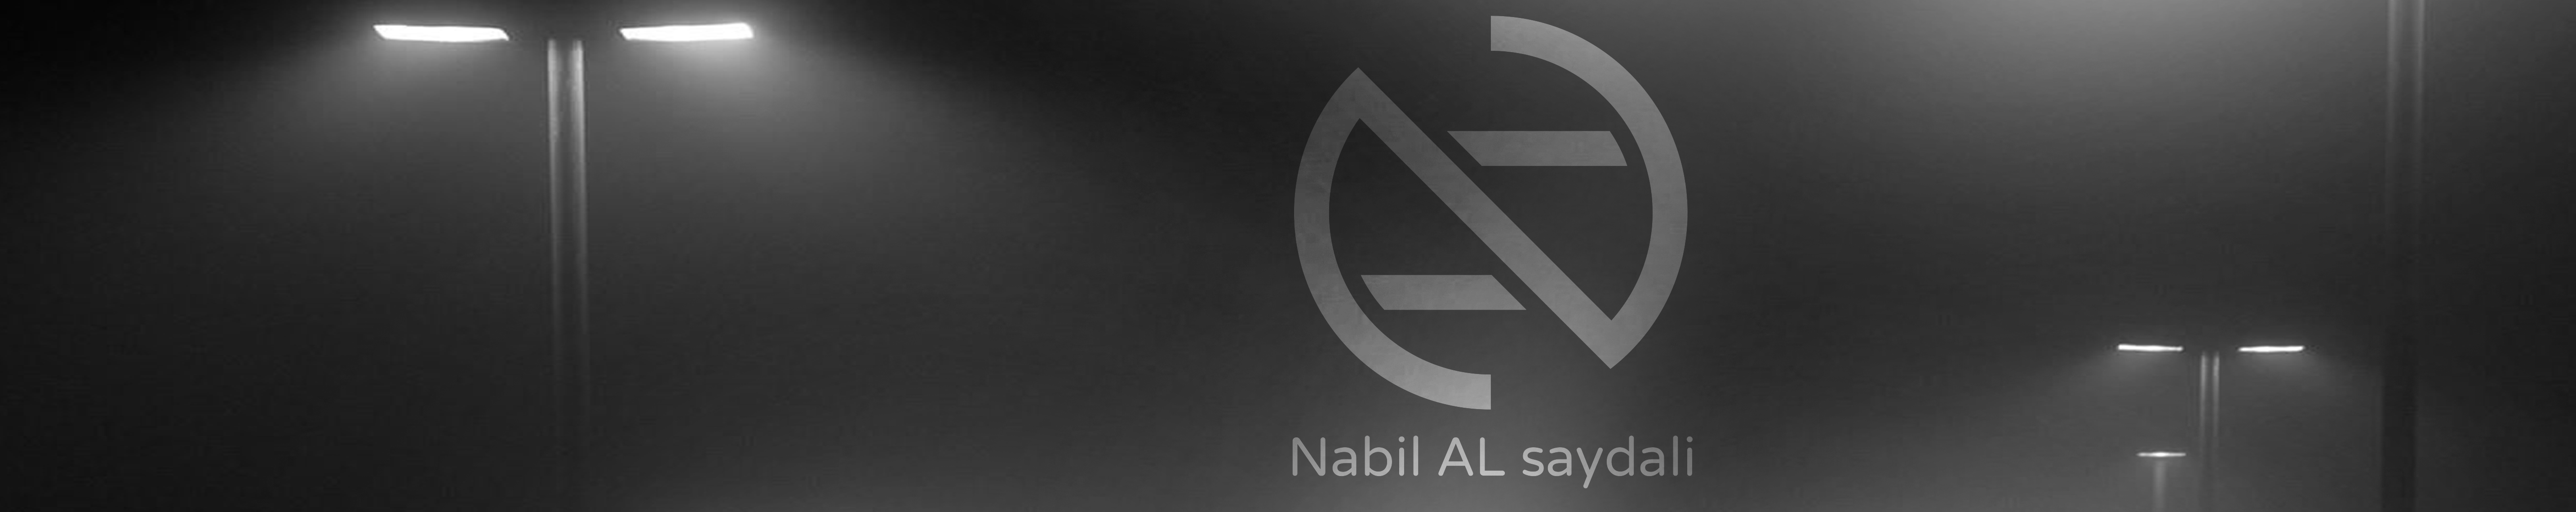 Nabil Al Saydali's profile banner